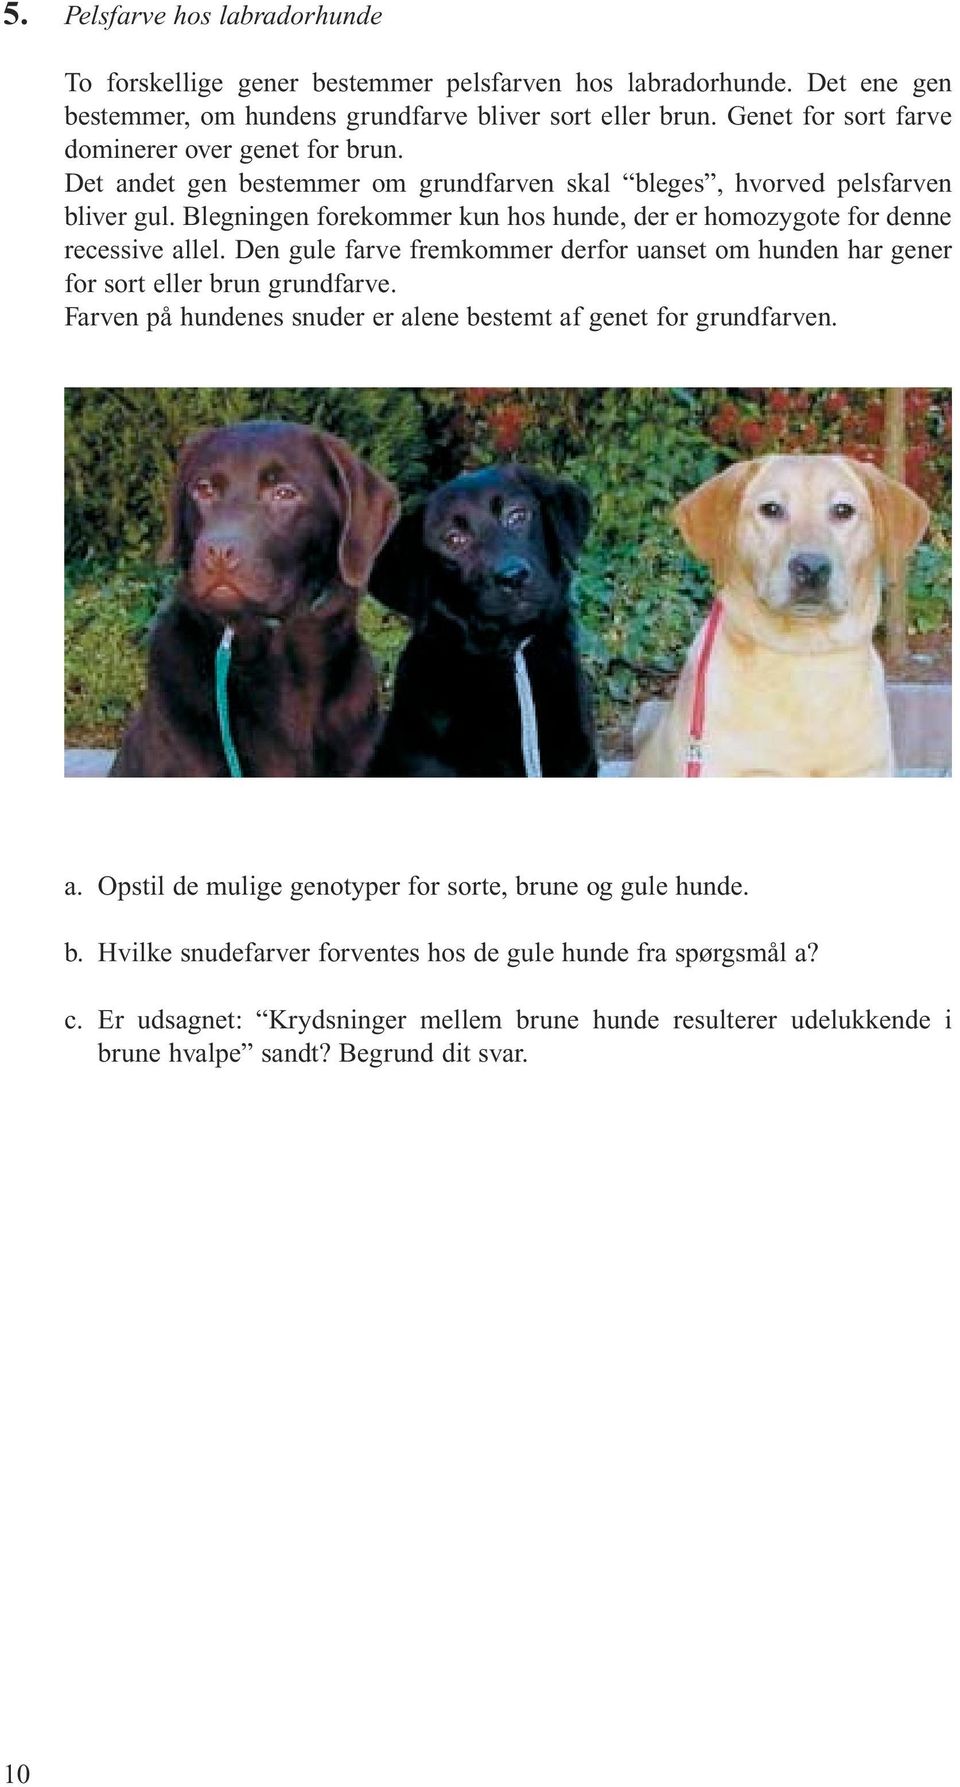 Blegningen forekommer kun hos hunde, der er homozygote for denne recessive allel. Den gule farve fremkommer derfor uanset om hunden har gener for sort eller brun grundfarve.